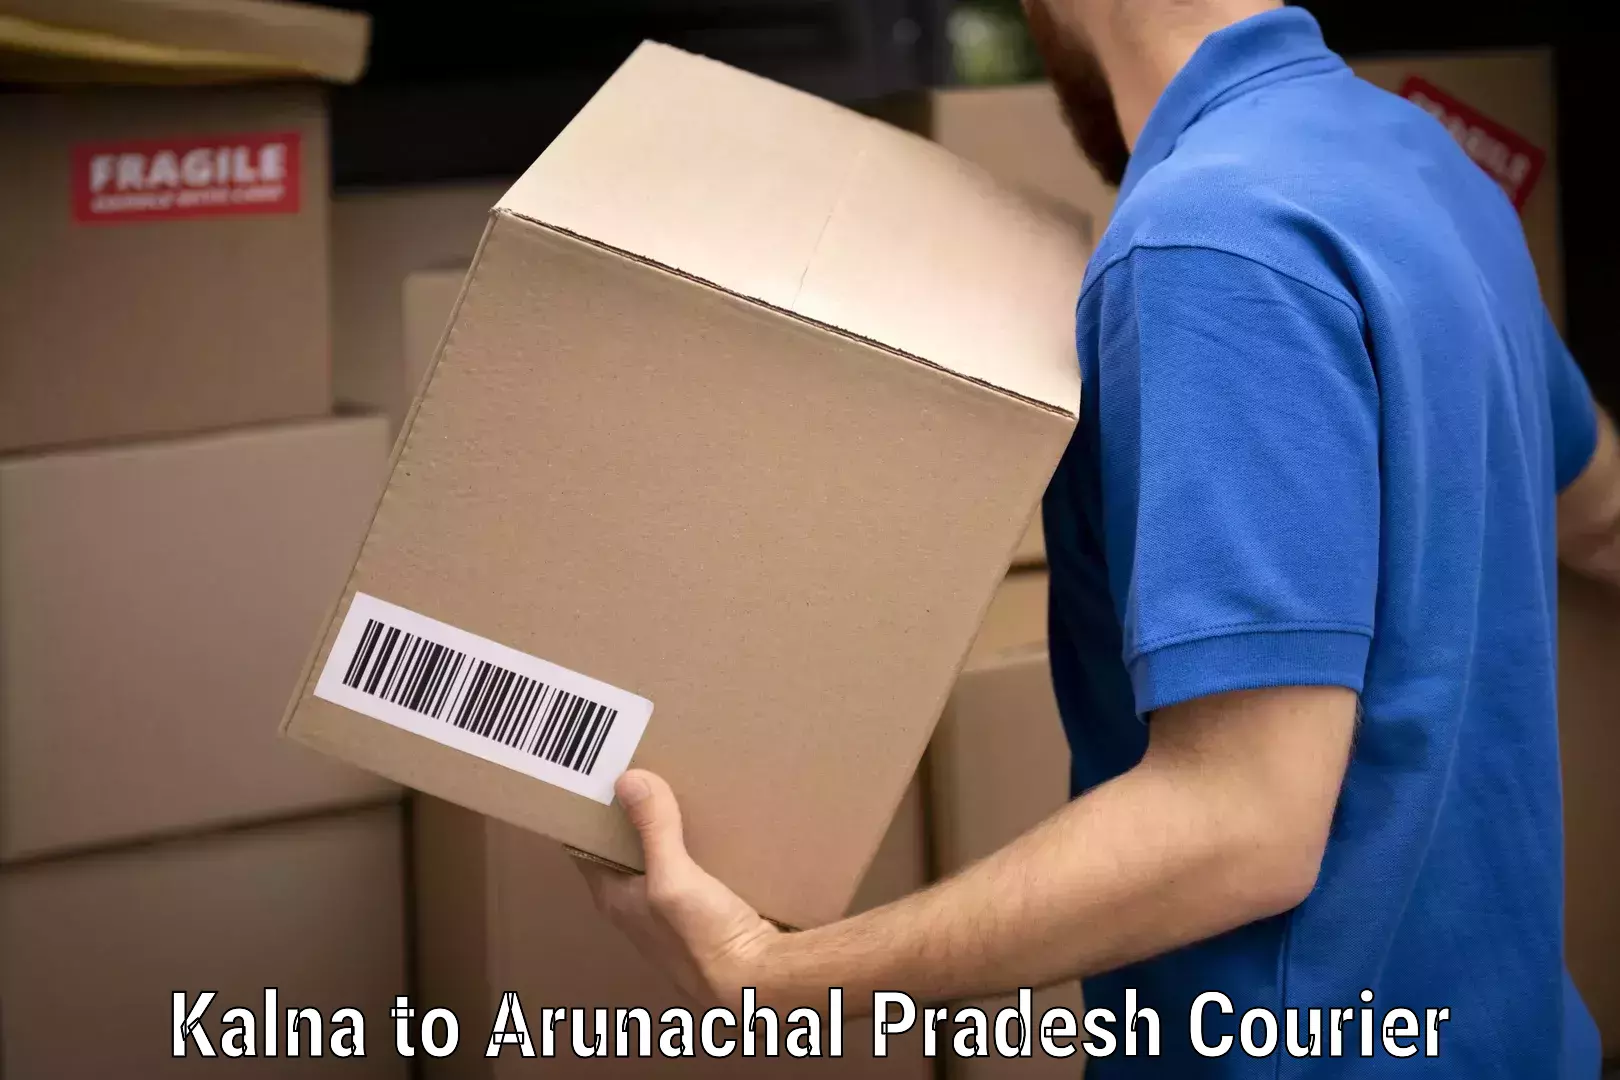 Specialized moving company in Kalna to Arunachal Pradesh